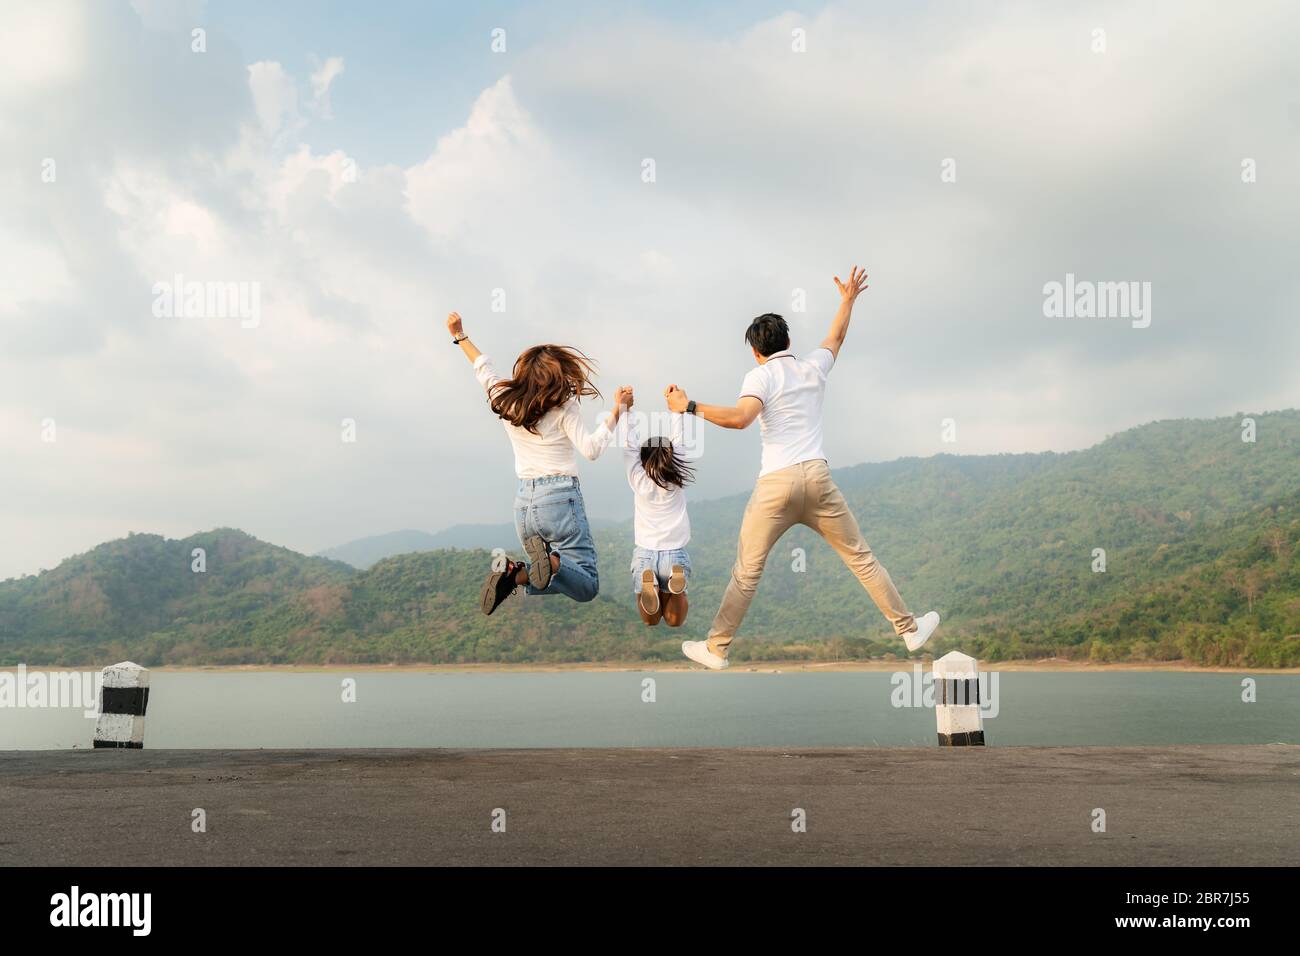 Famille asiatique heureuse avec père, mère et fille sautant dans la route avec vue sur le lac et la montagne en arrière-plan pendant les vacances ensemble en vacances. Happ Banque D'Images